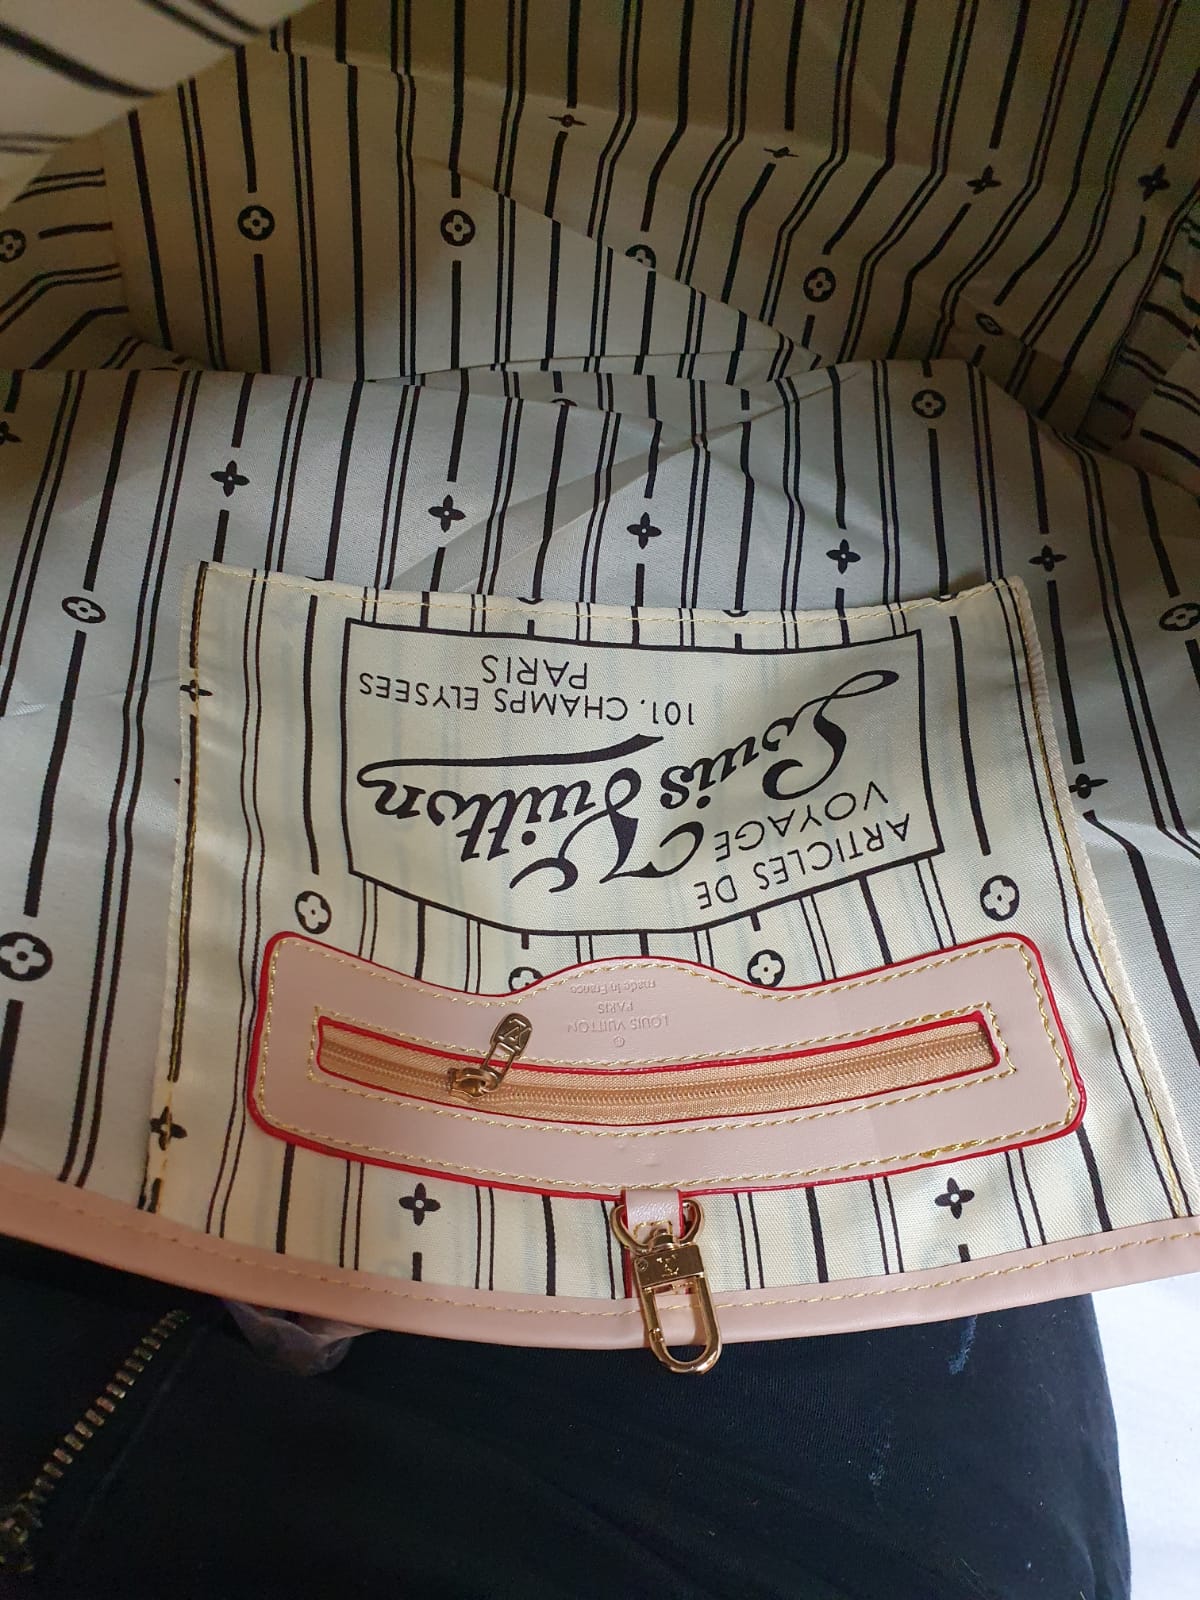 Louis Vuitton  Neverfull bag